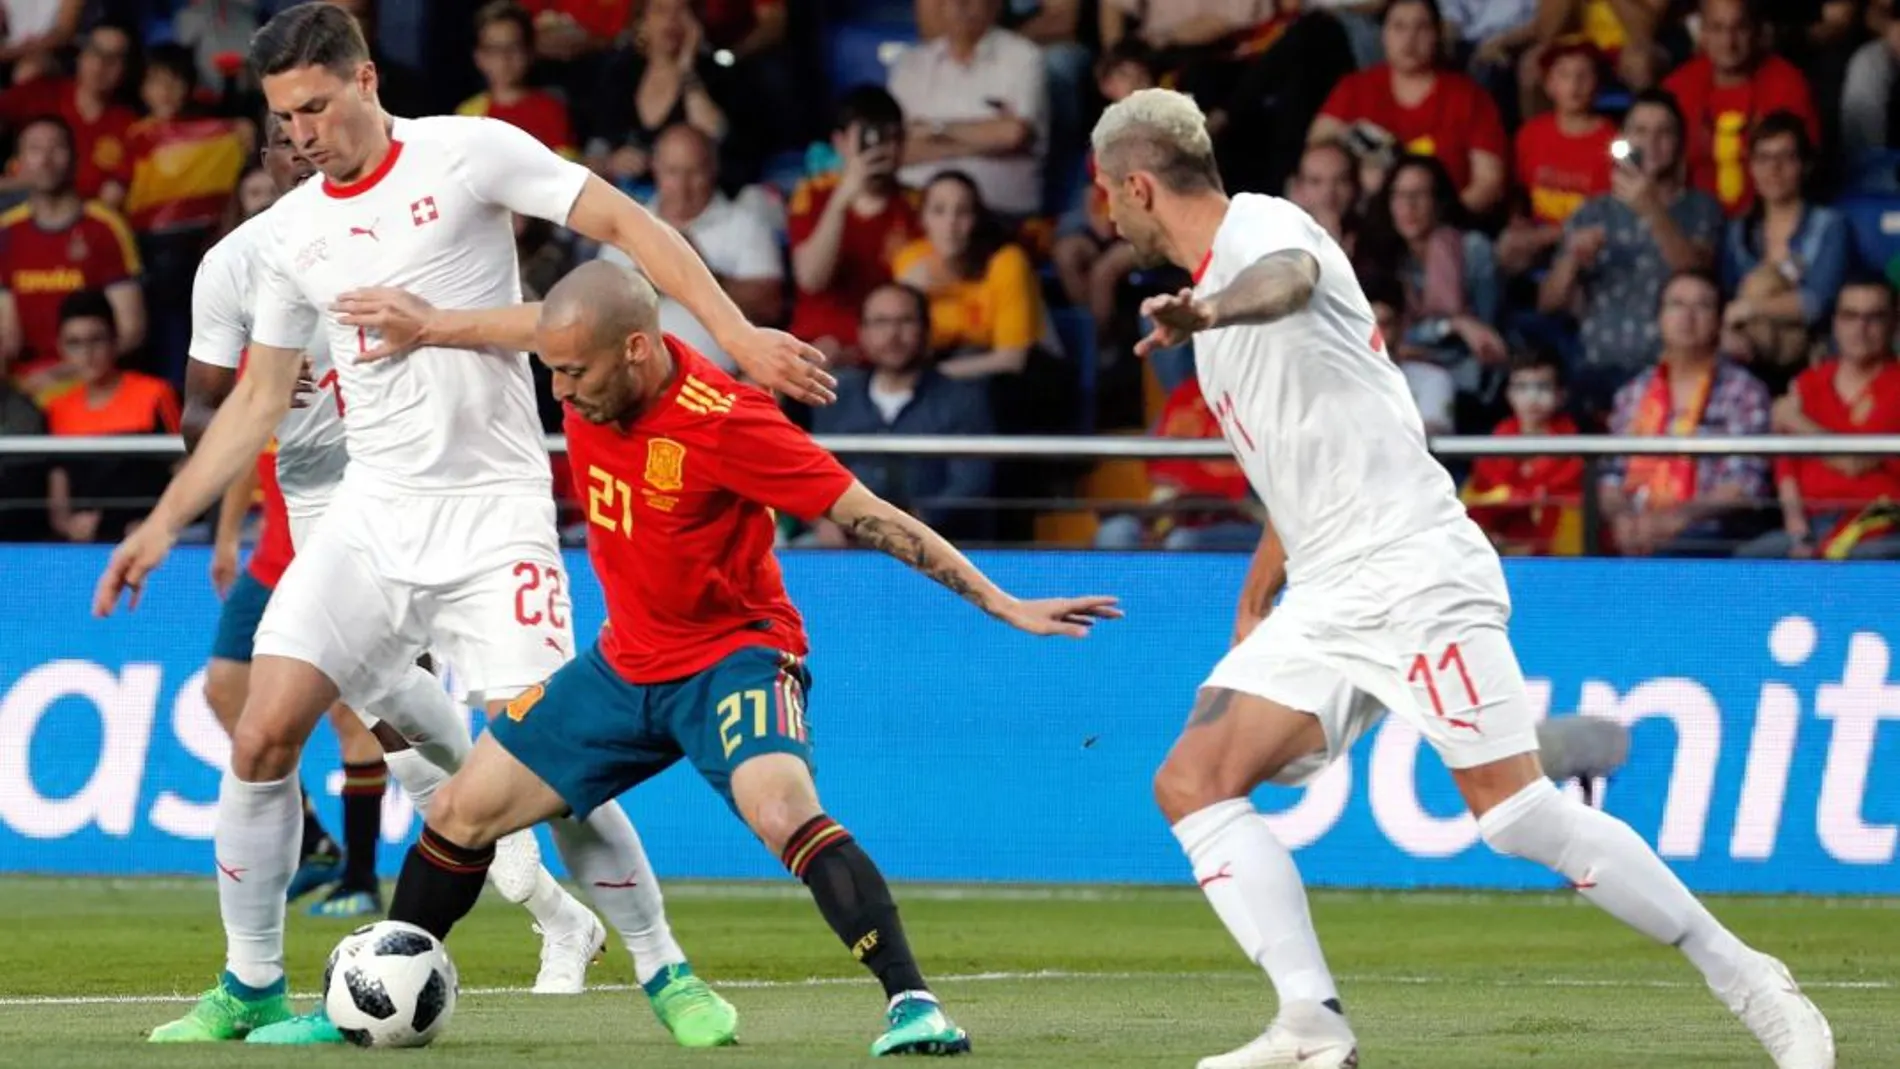 El centrocampista de España David Silva con el balón ante los jugadores de Suiza, Fabian Schar y Valon Berhami durante el partido amistoso / Foto: Efe